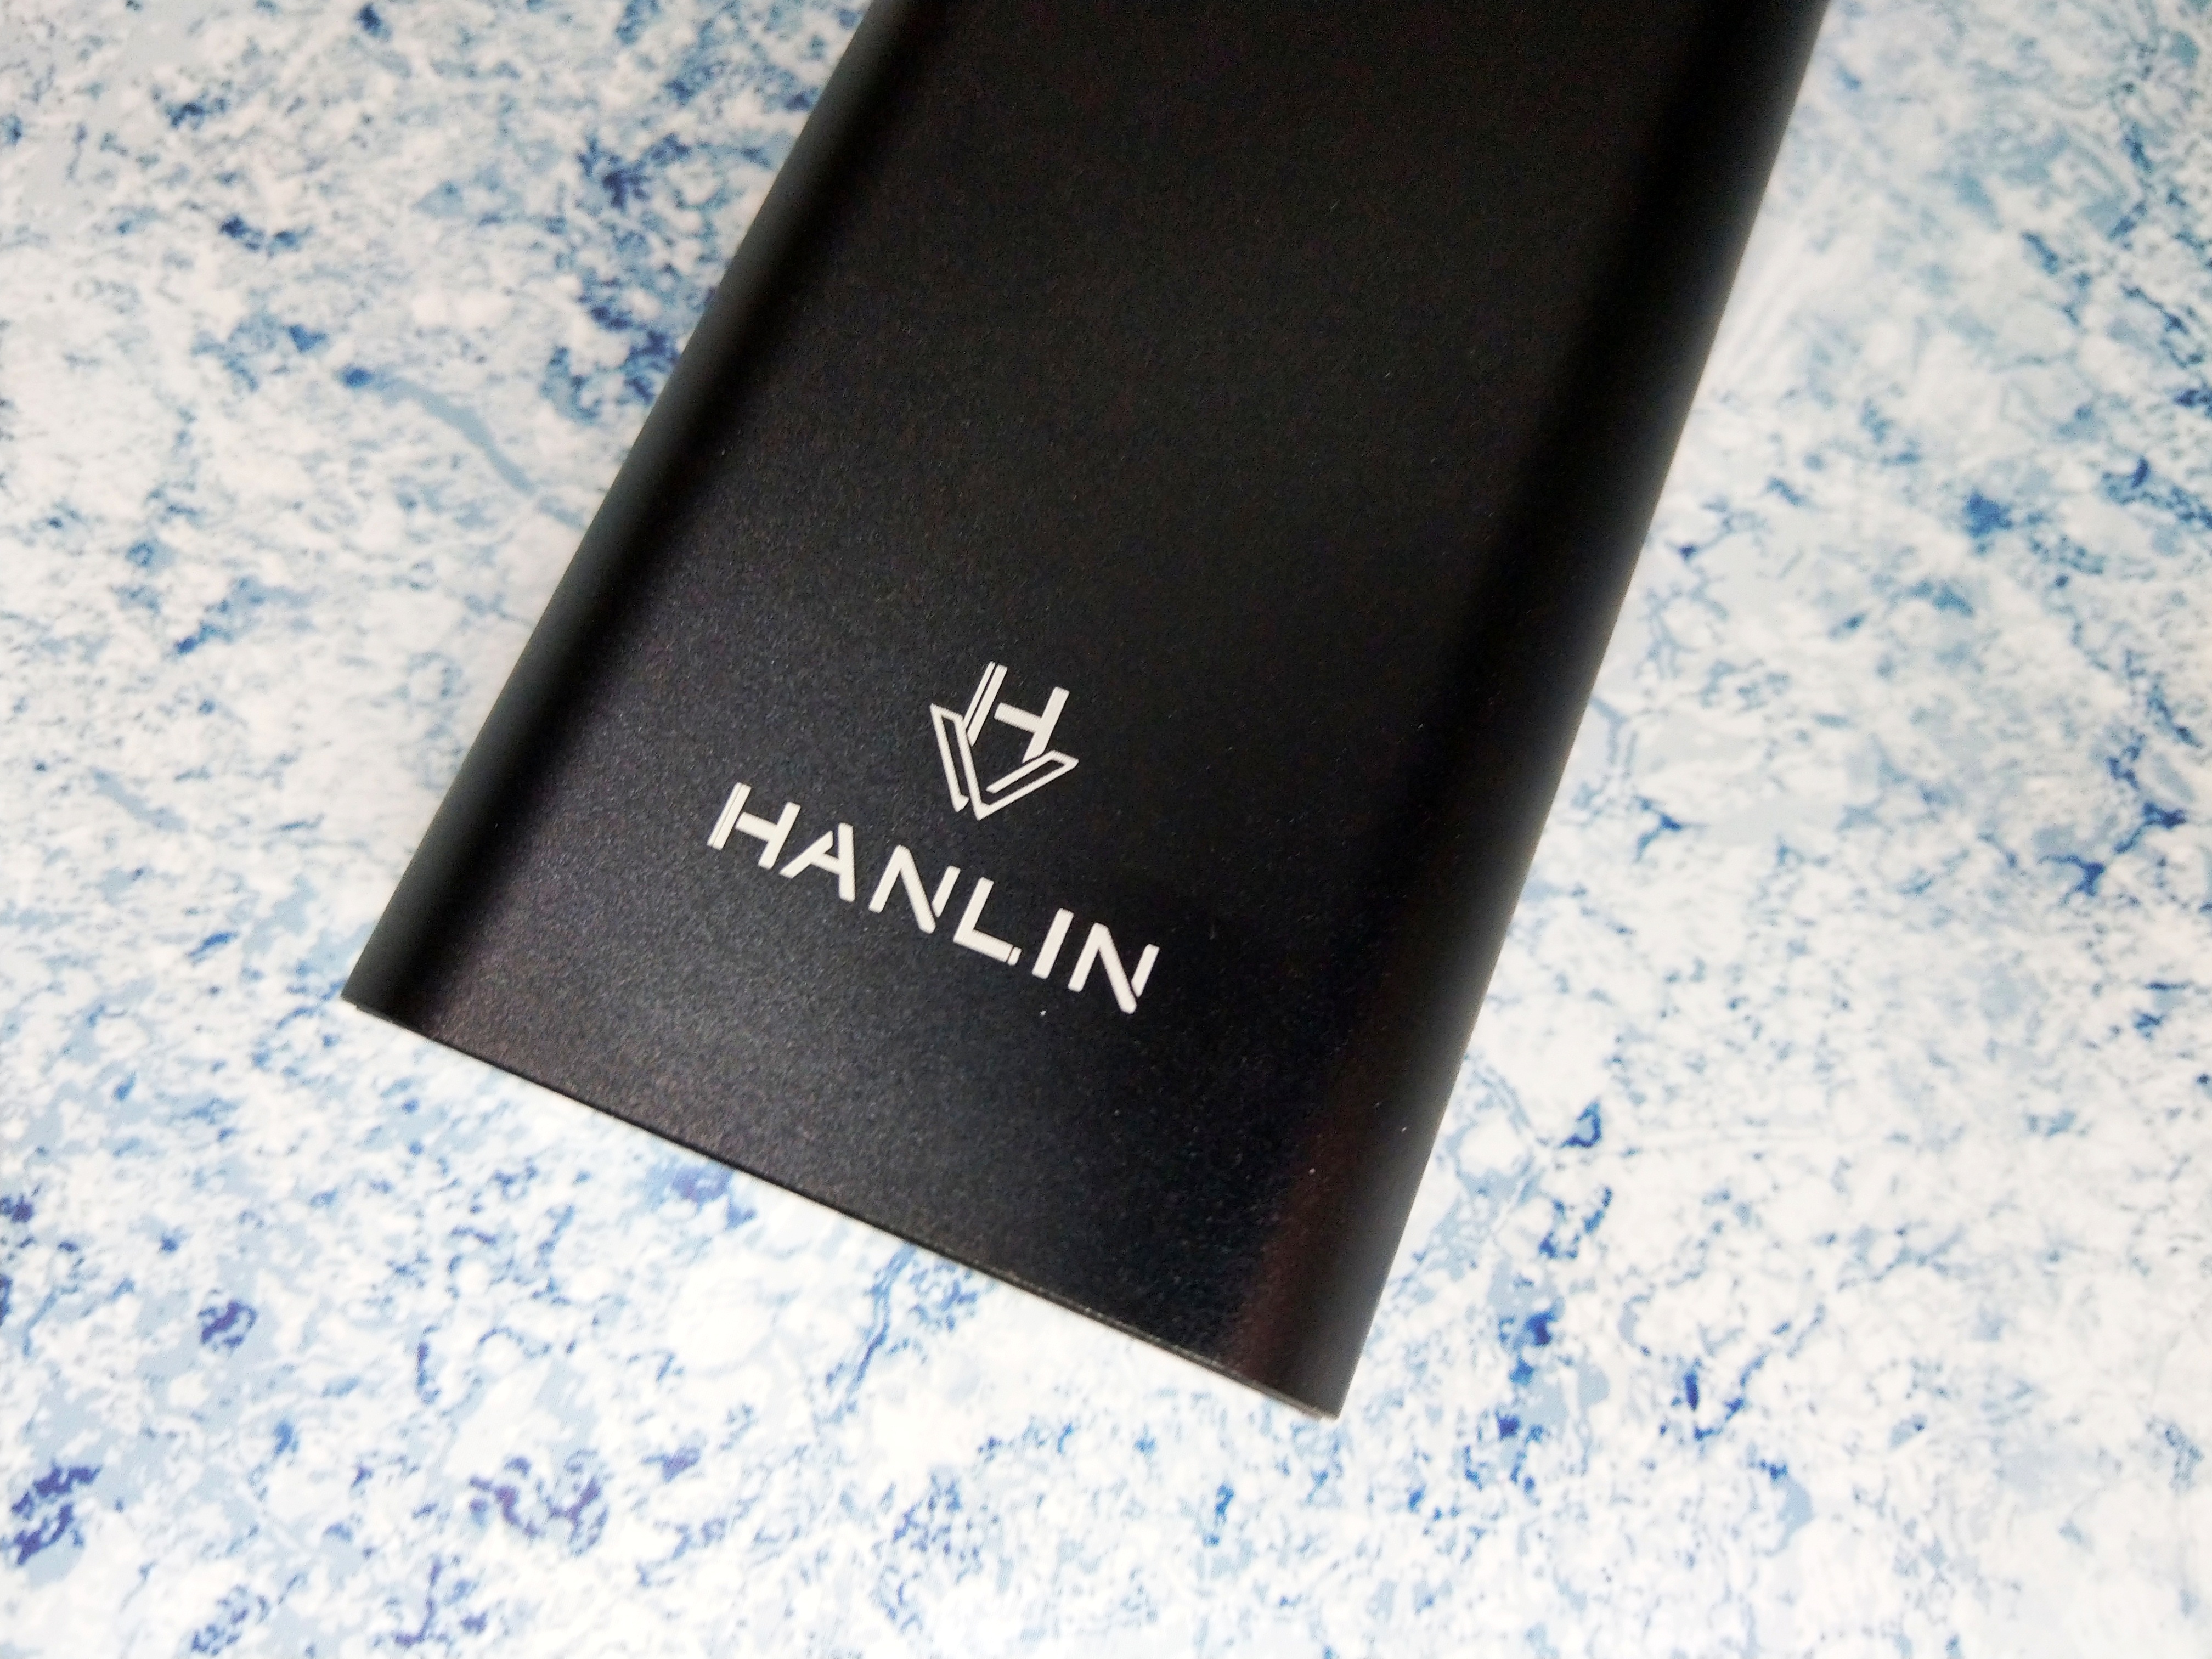 HANLIN – 石墨烯行動電源、快速充電實測